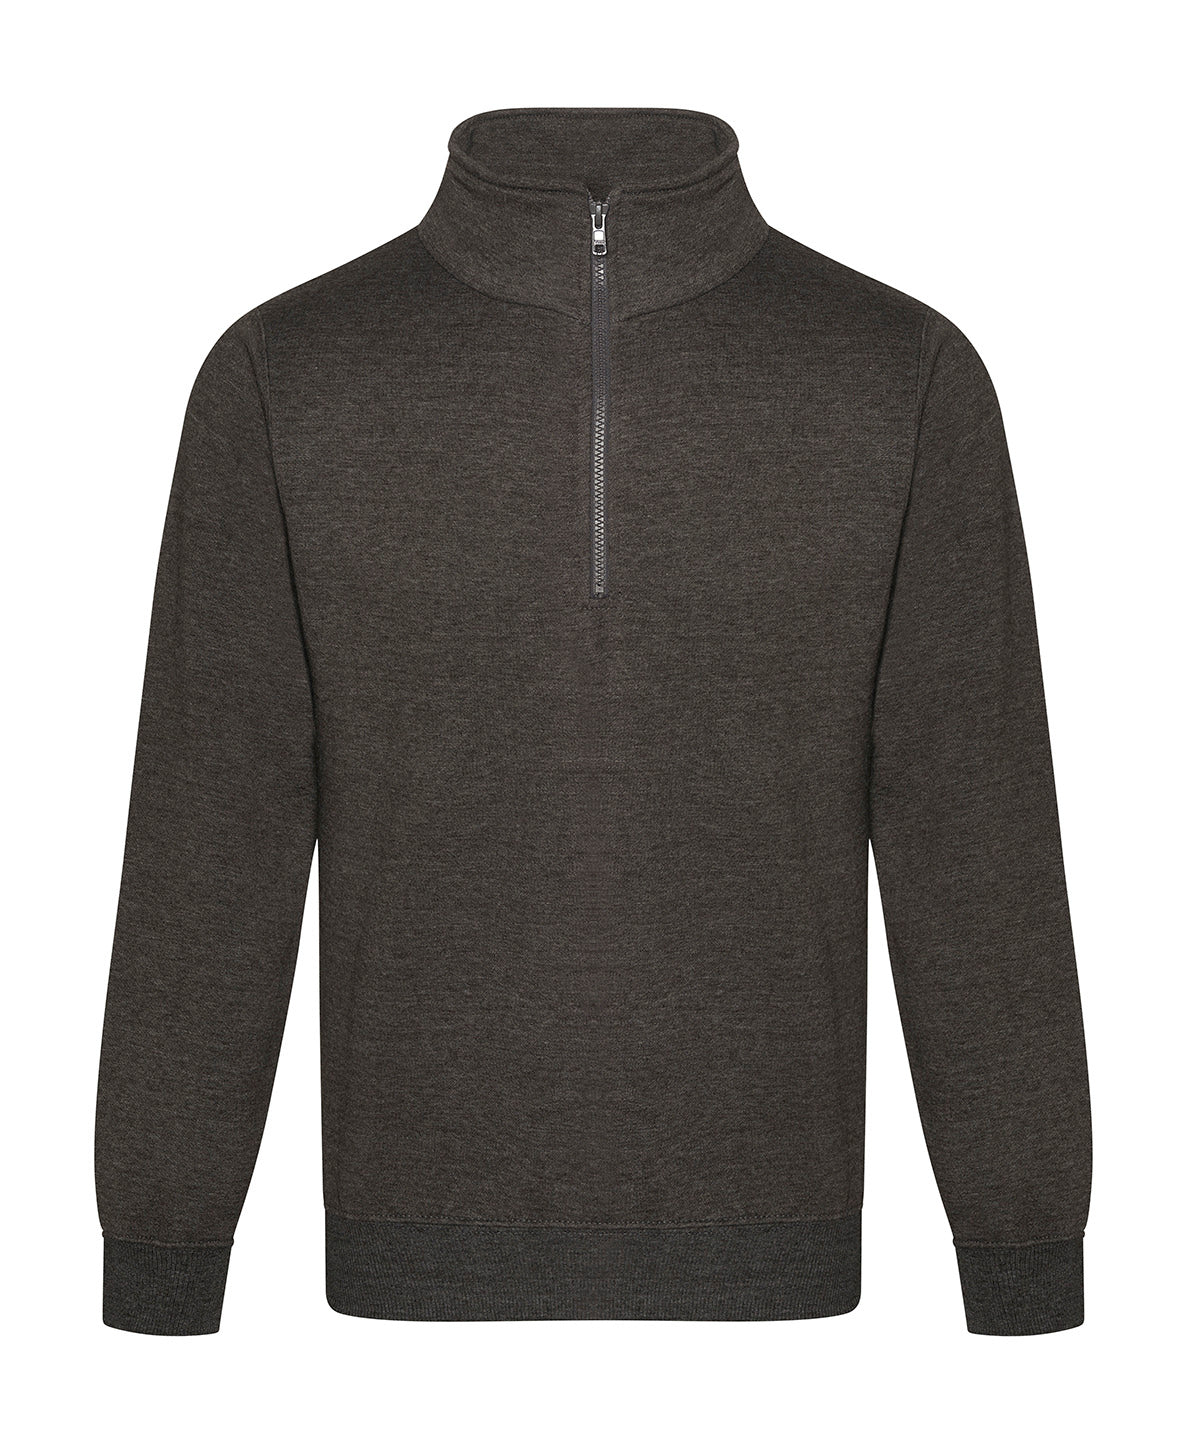 Pro ¼-neck zip sweatshirt